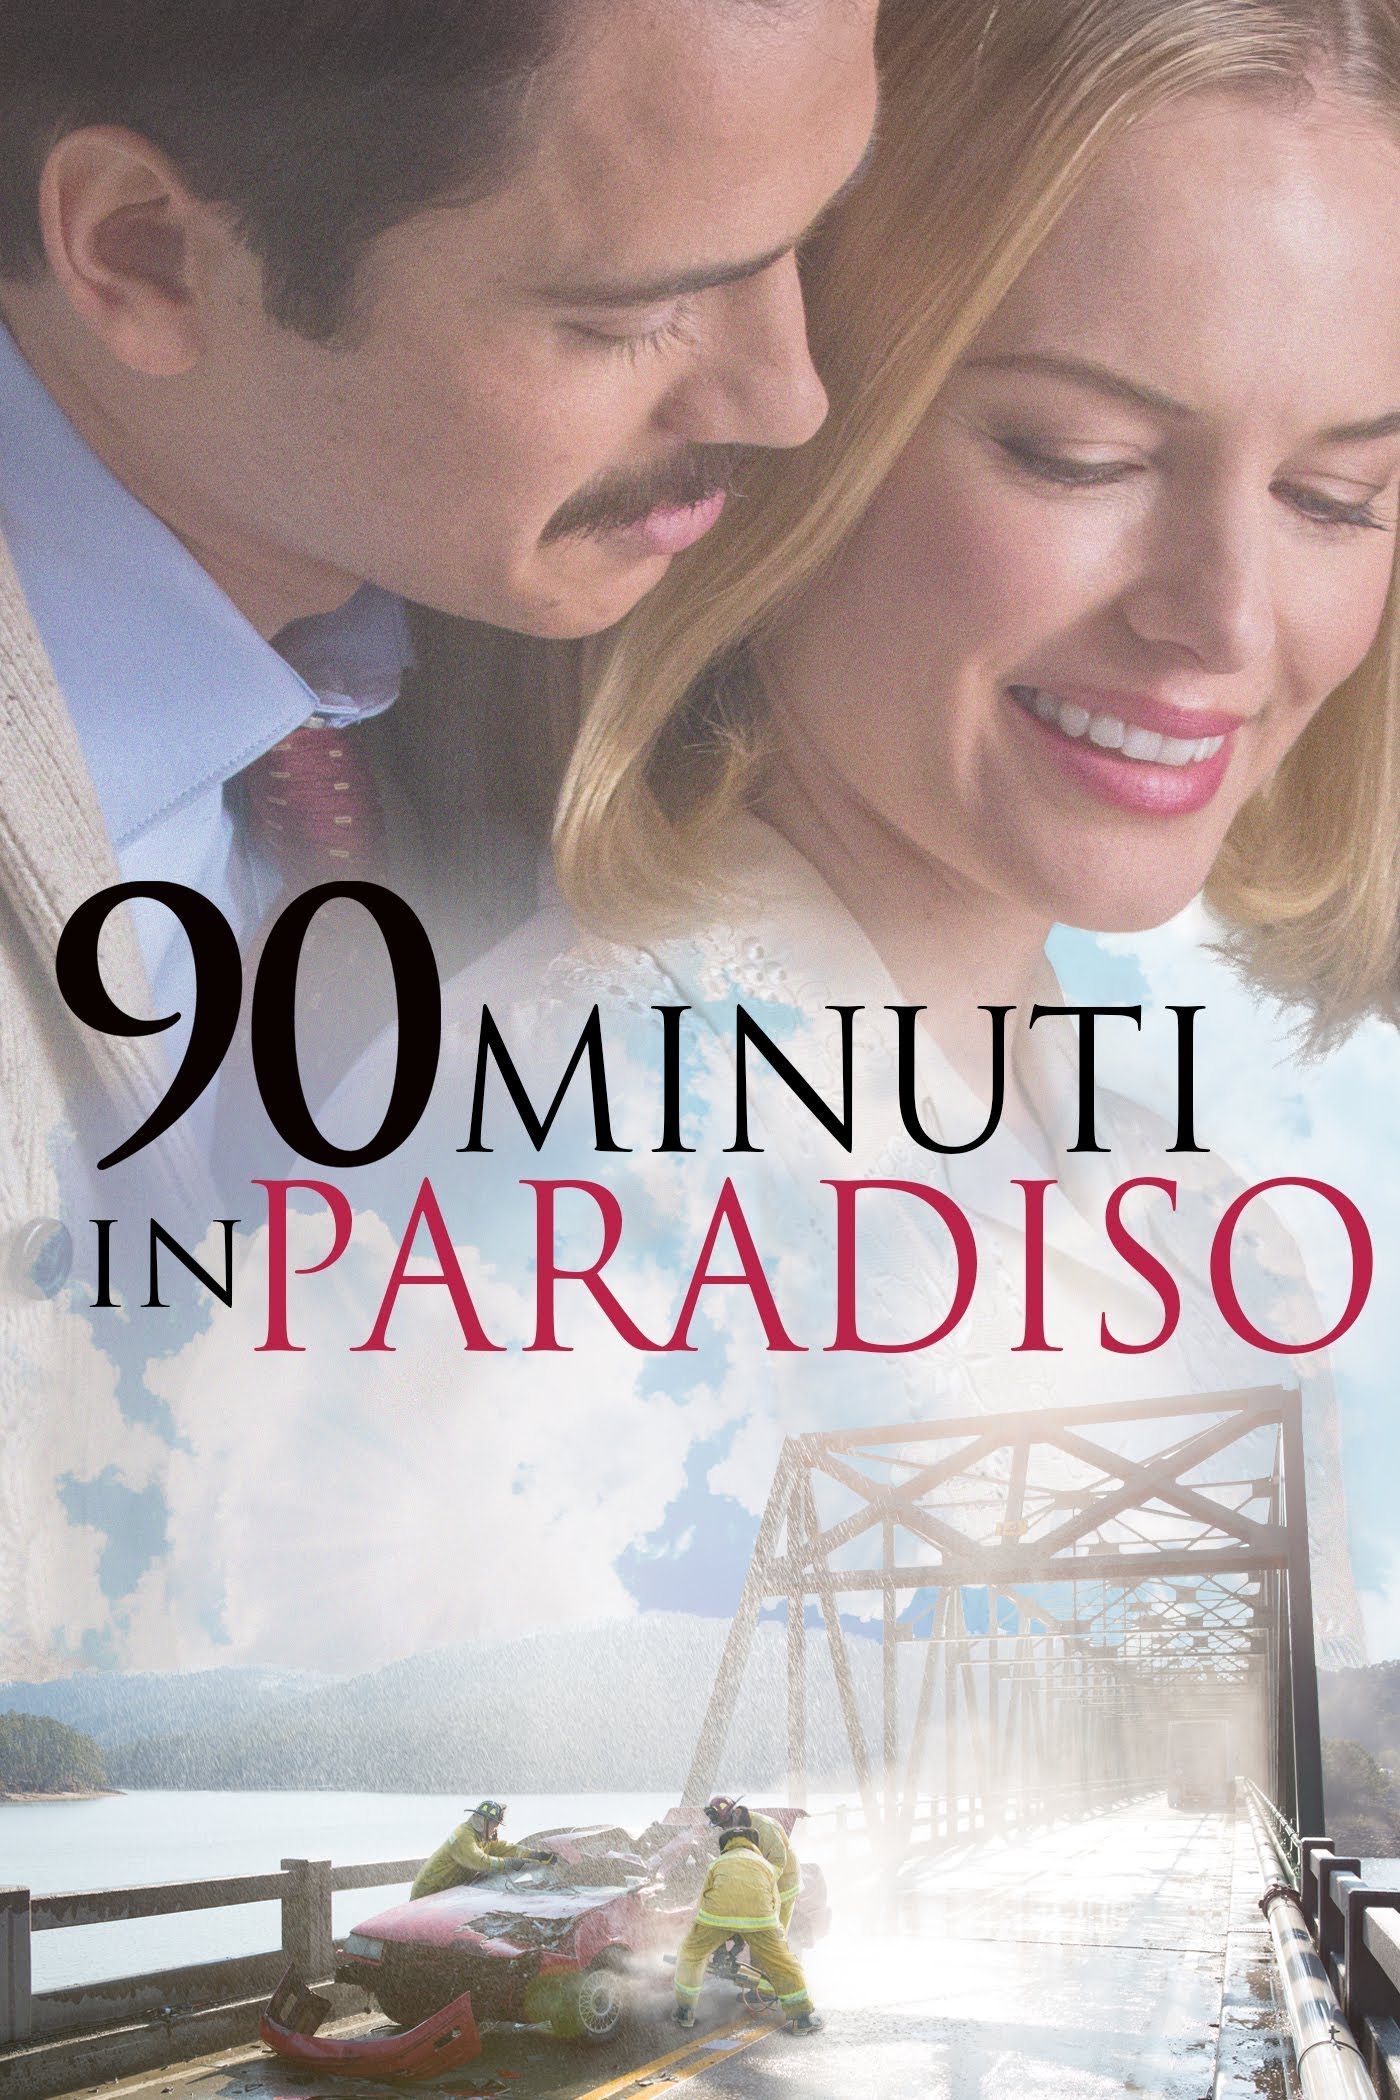 90 minuti in Paradiso [HD] (2015)